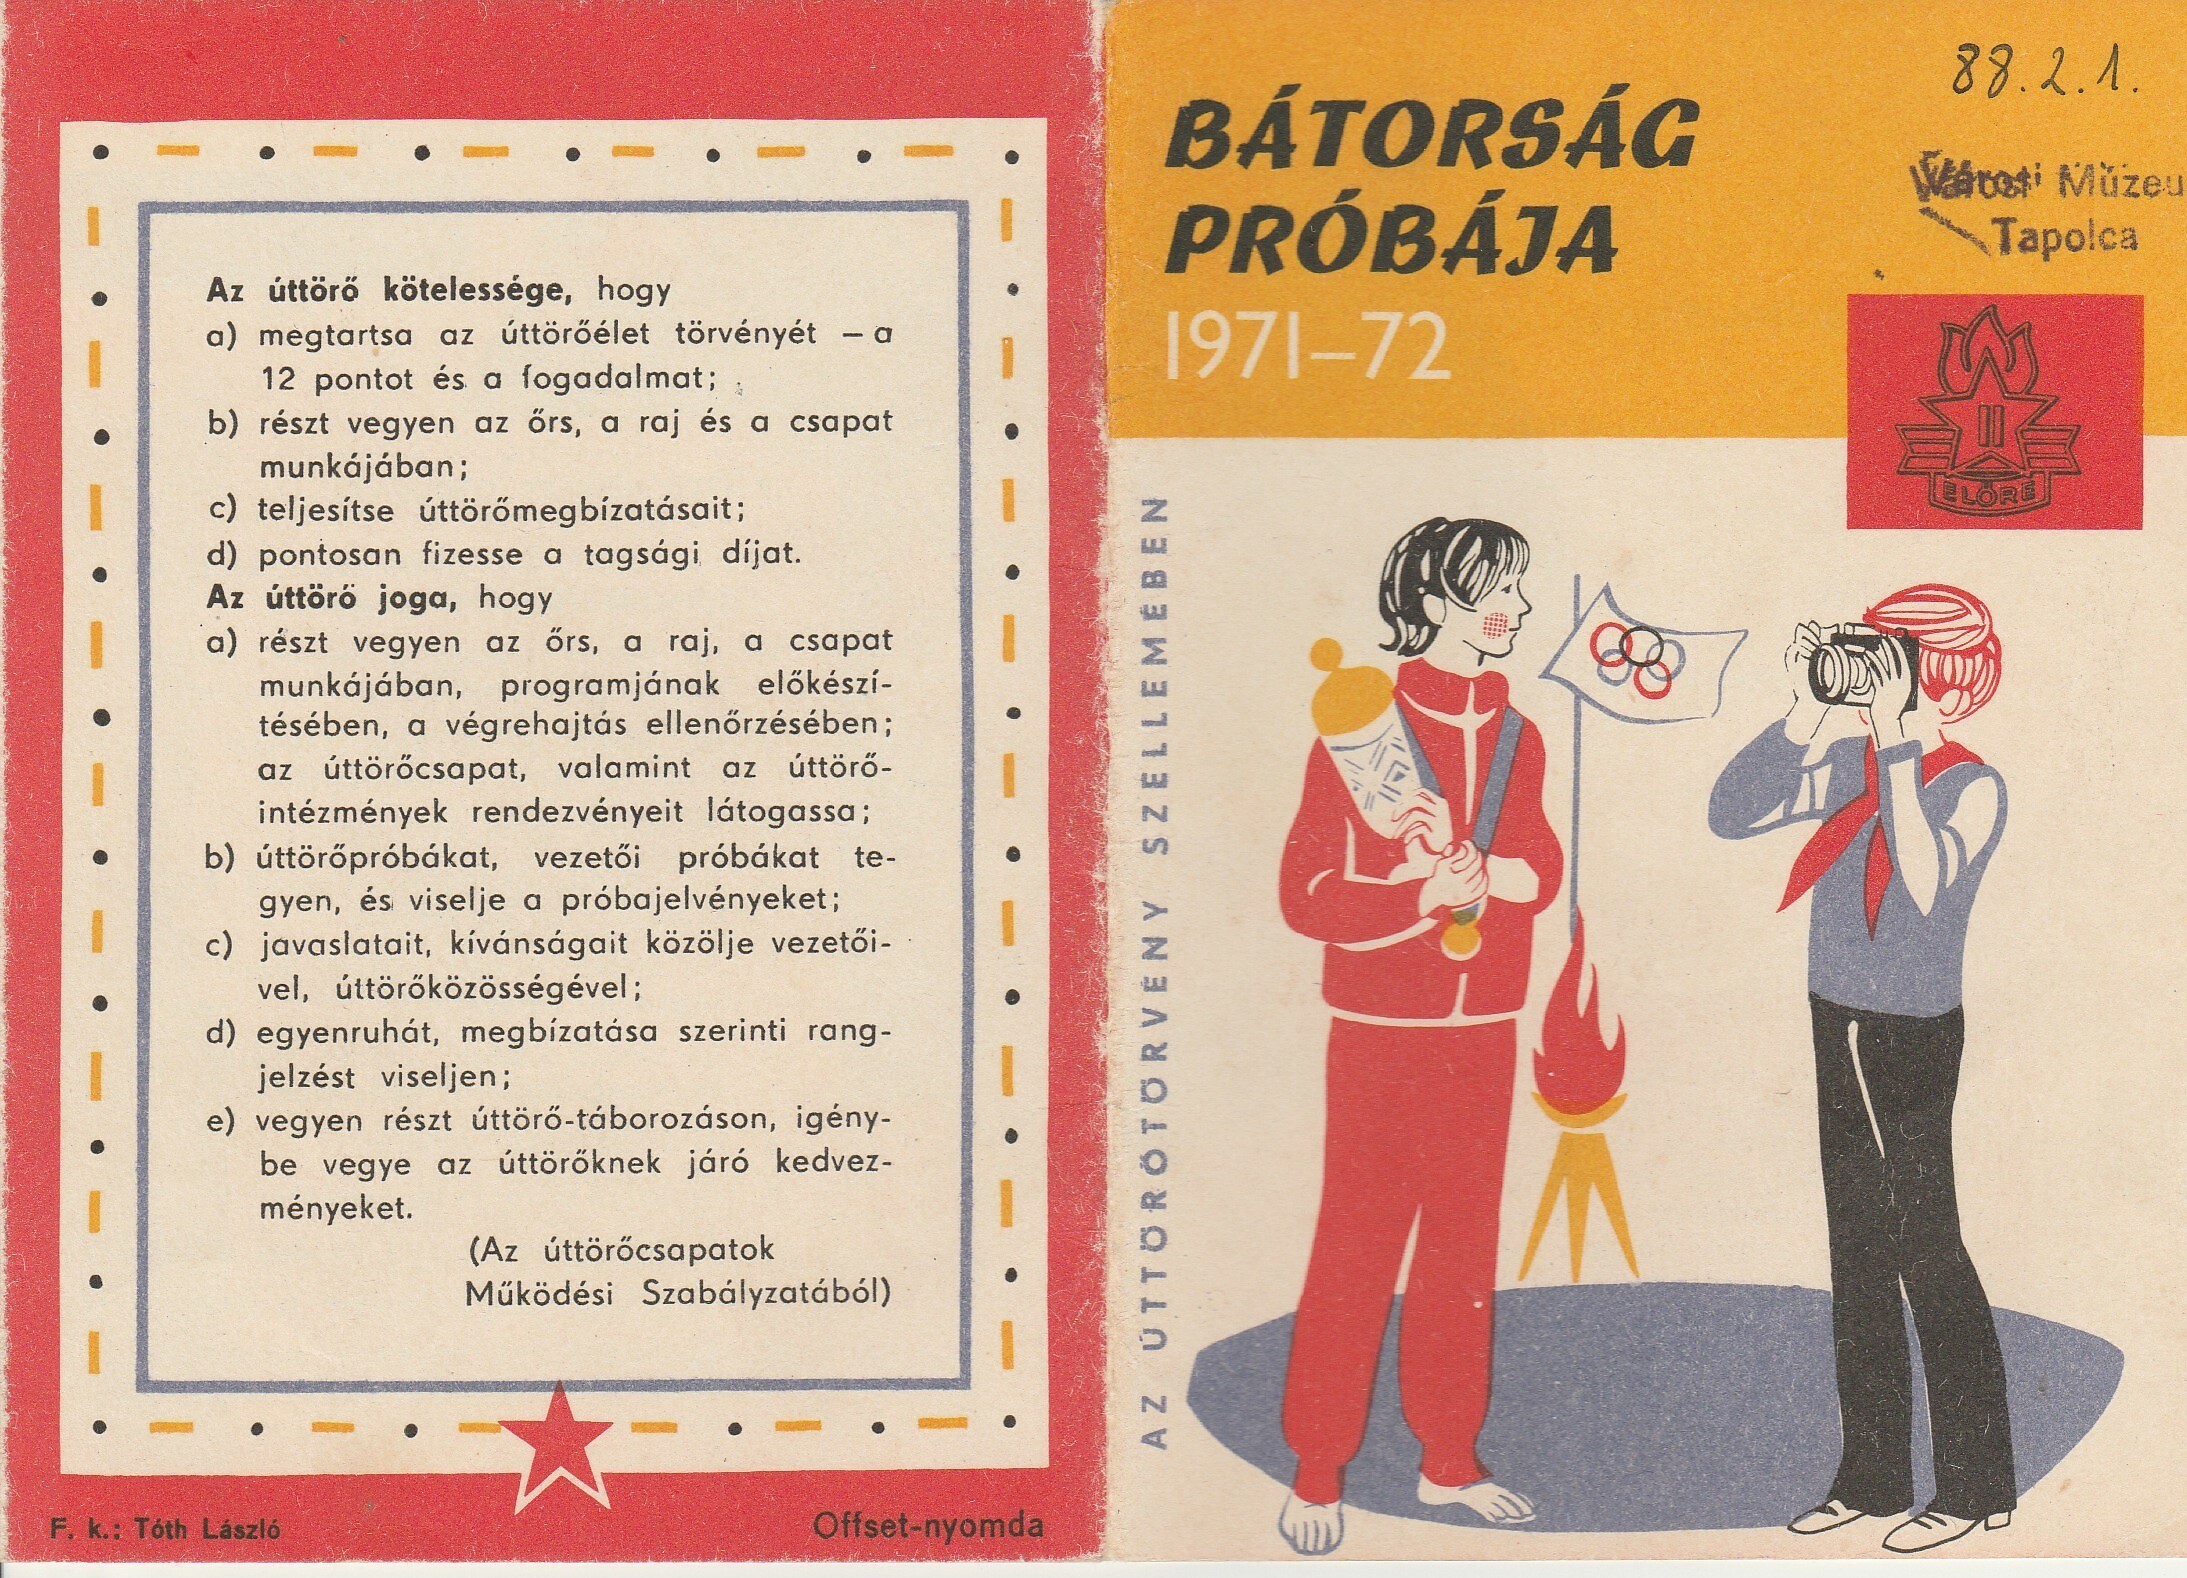 Úttörő bátorságpróba igazoló lapja 1971-72 (Tapolcai Városi Múzeum CC BY-NC-SA)